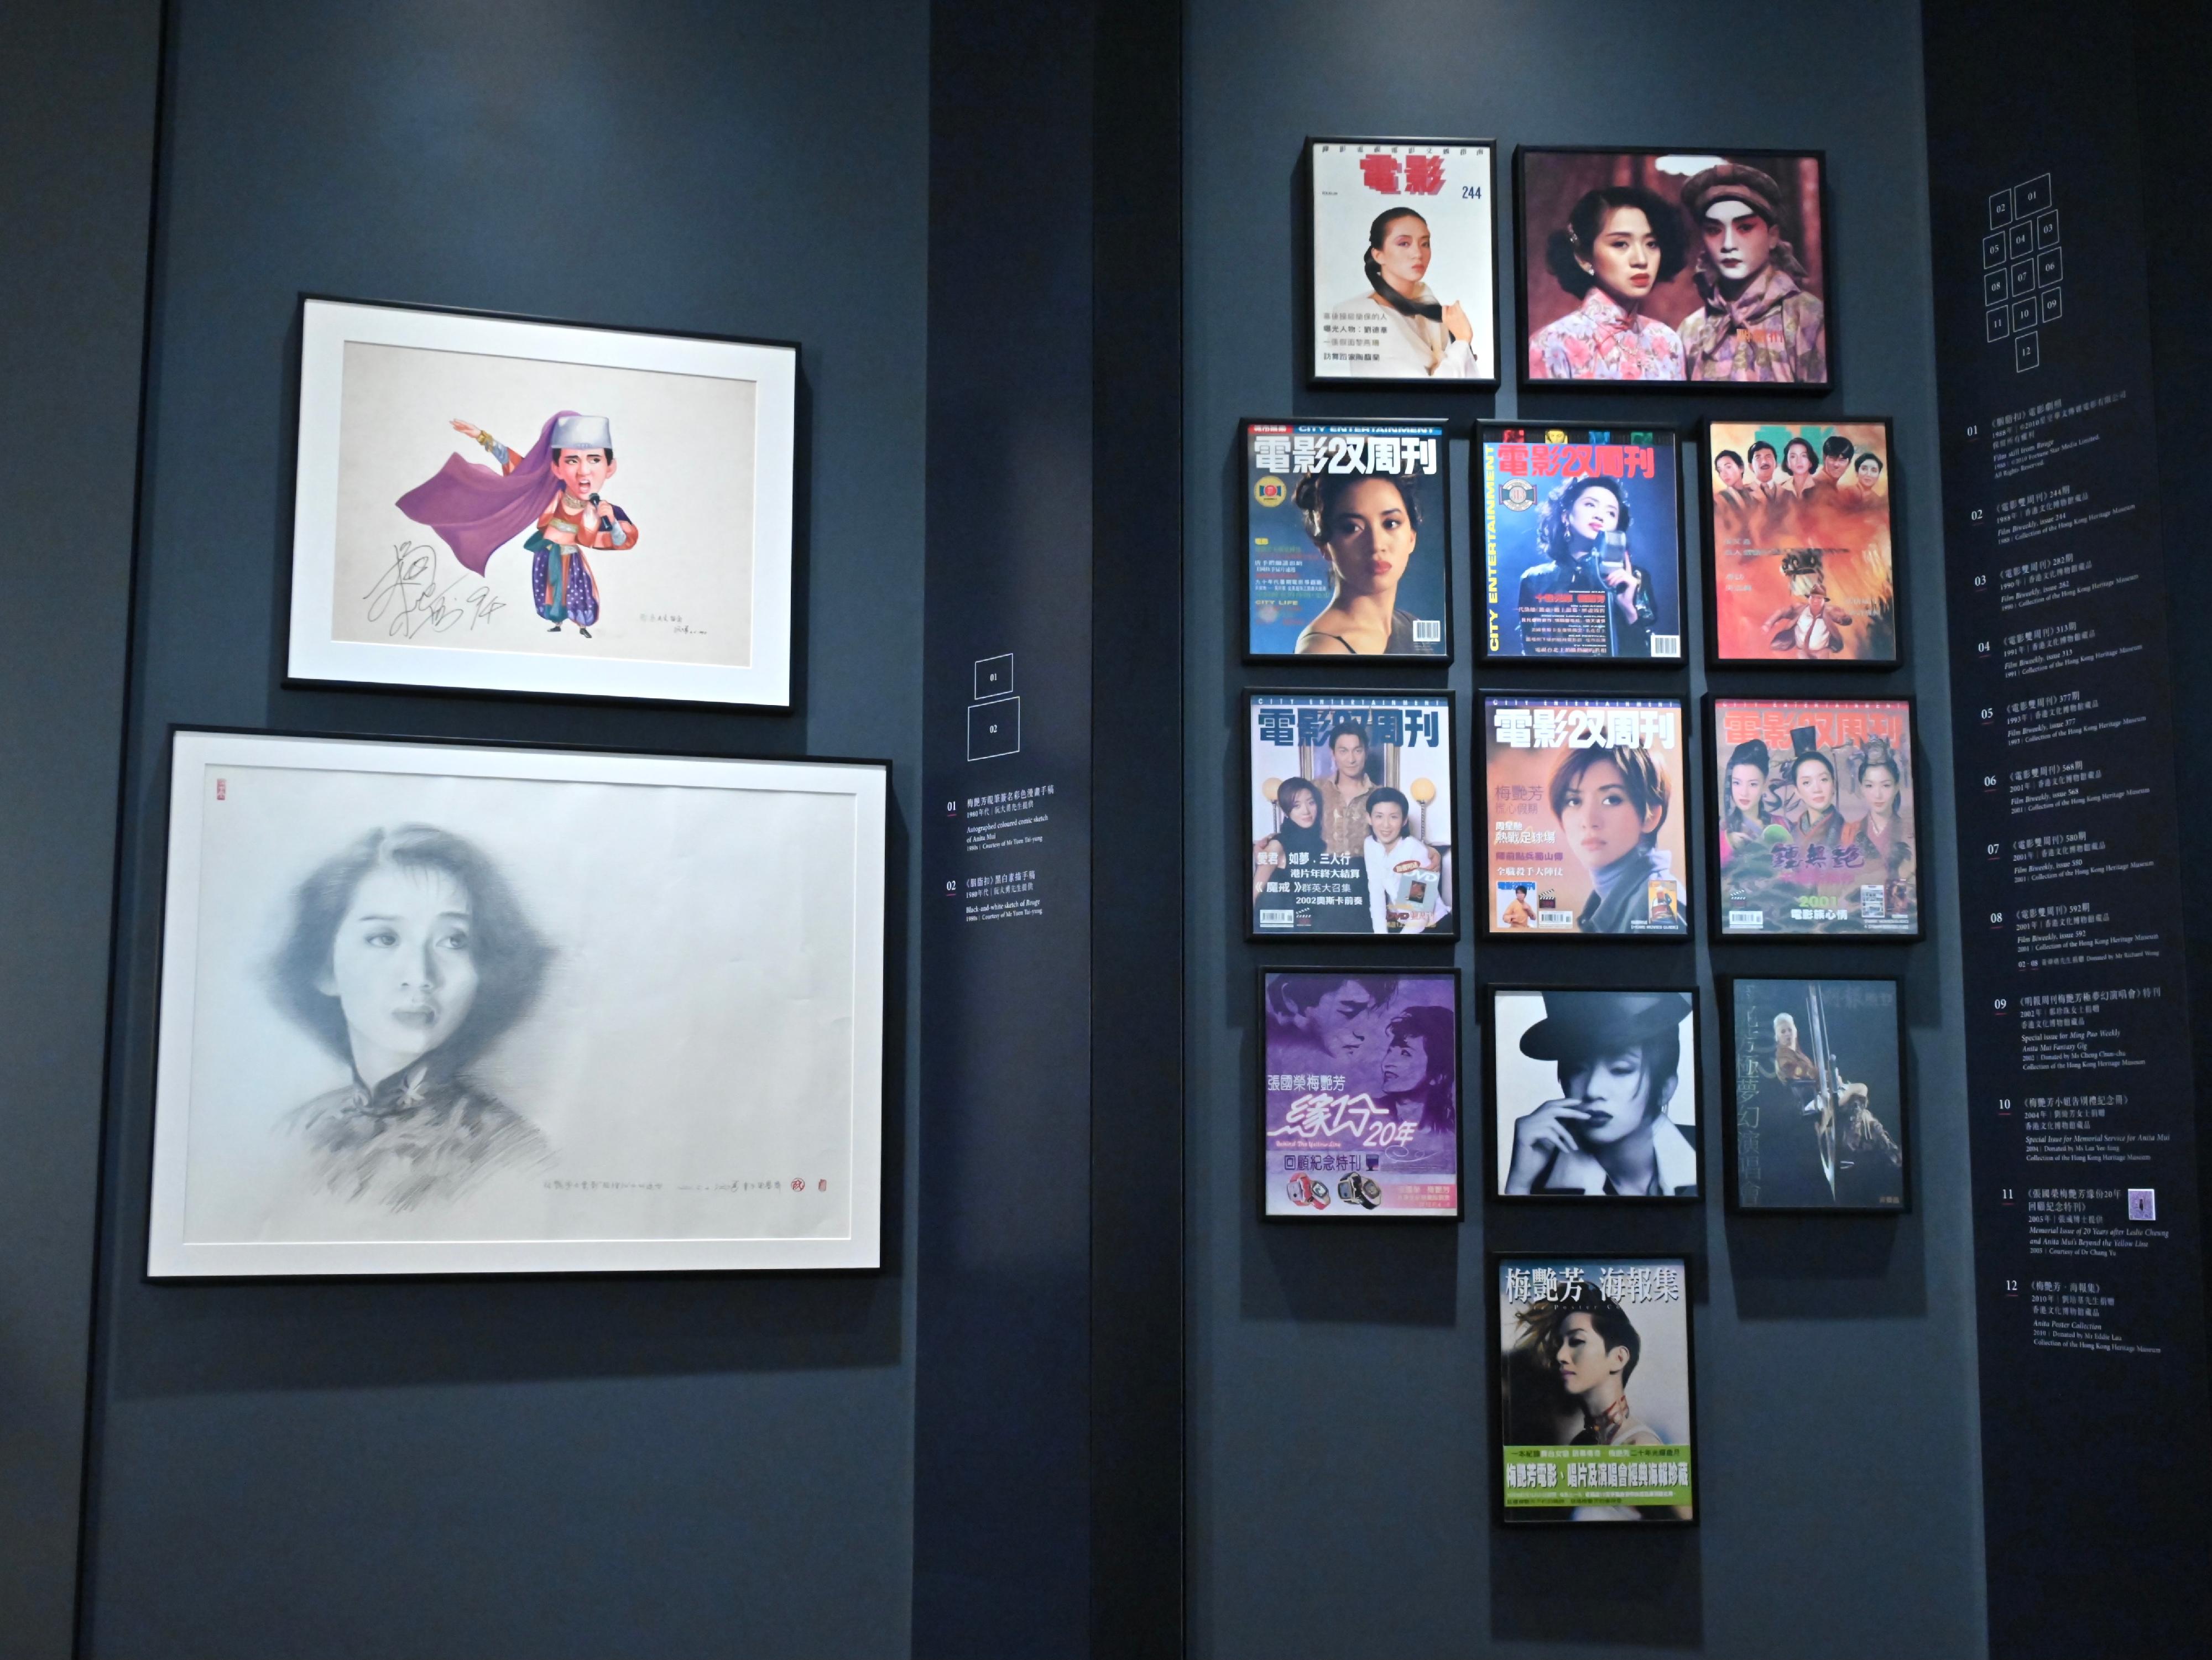 「絕代芳華・梅艷芳」展覽開幕典禮今日（十二月二十三日）在香港文化博物館舉行。圖示梅艷芳相關的流行文化產物，包括漫畫、雜誌封面及素描手稿等。